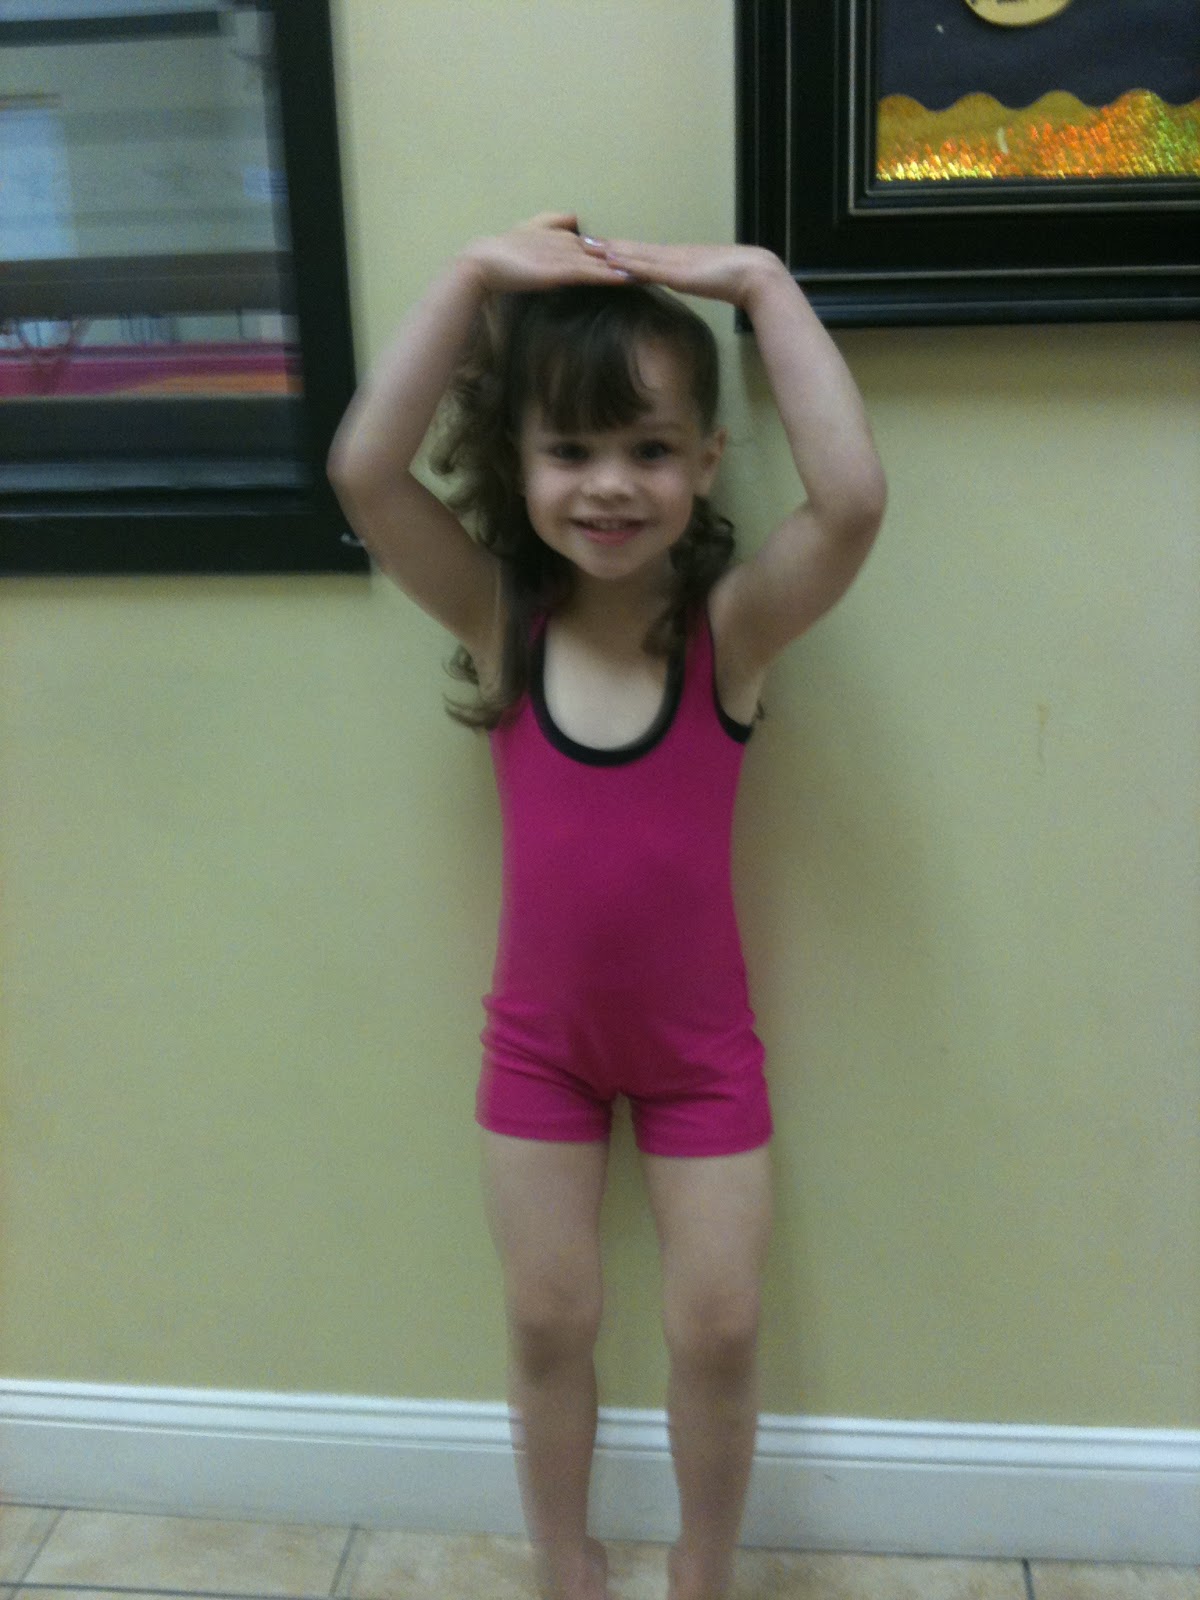 Little girls doing gymnastics! - YouTube